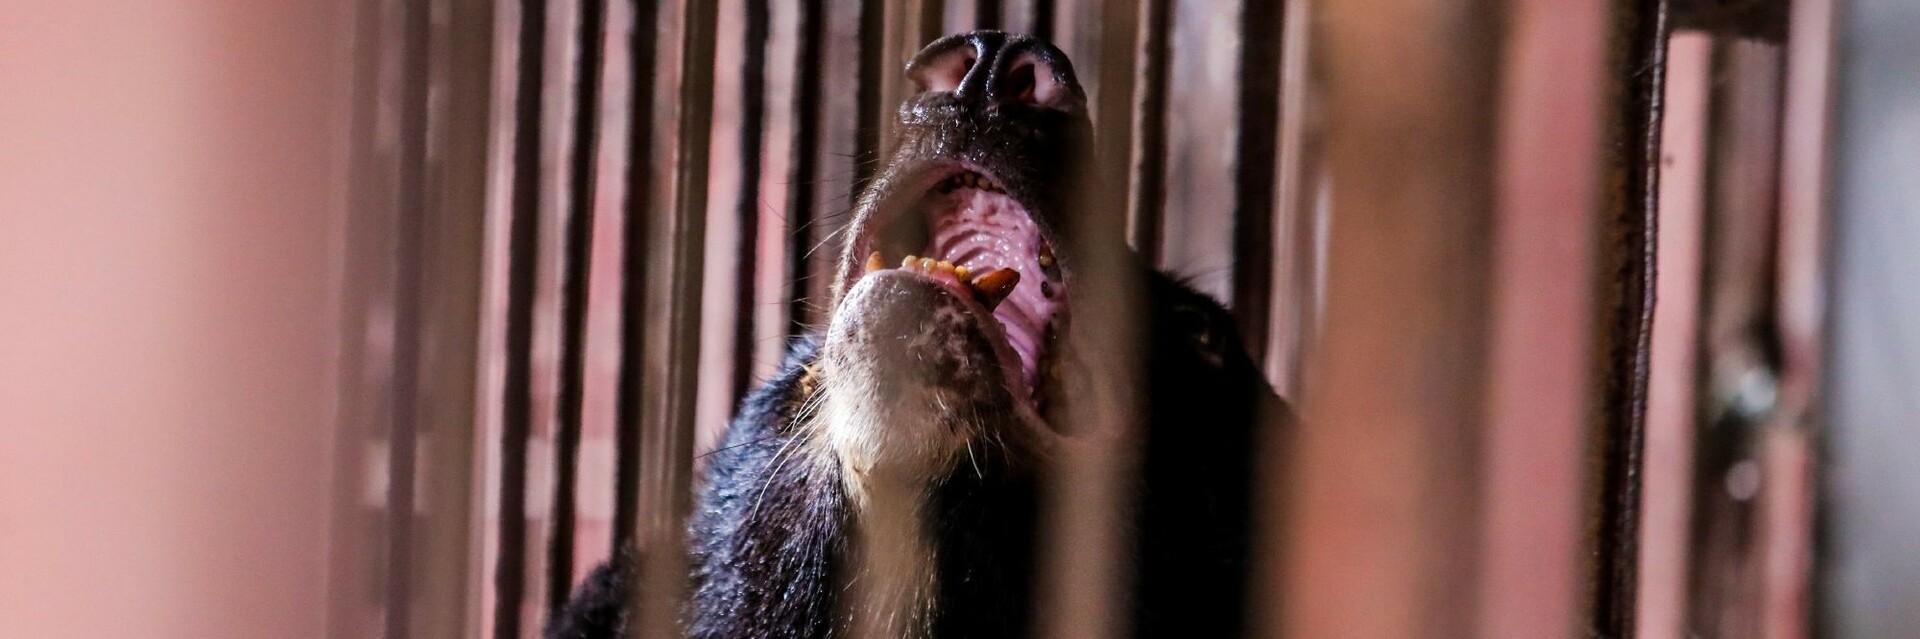 Ours au Vietnam-Exploités pour leur bile